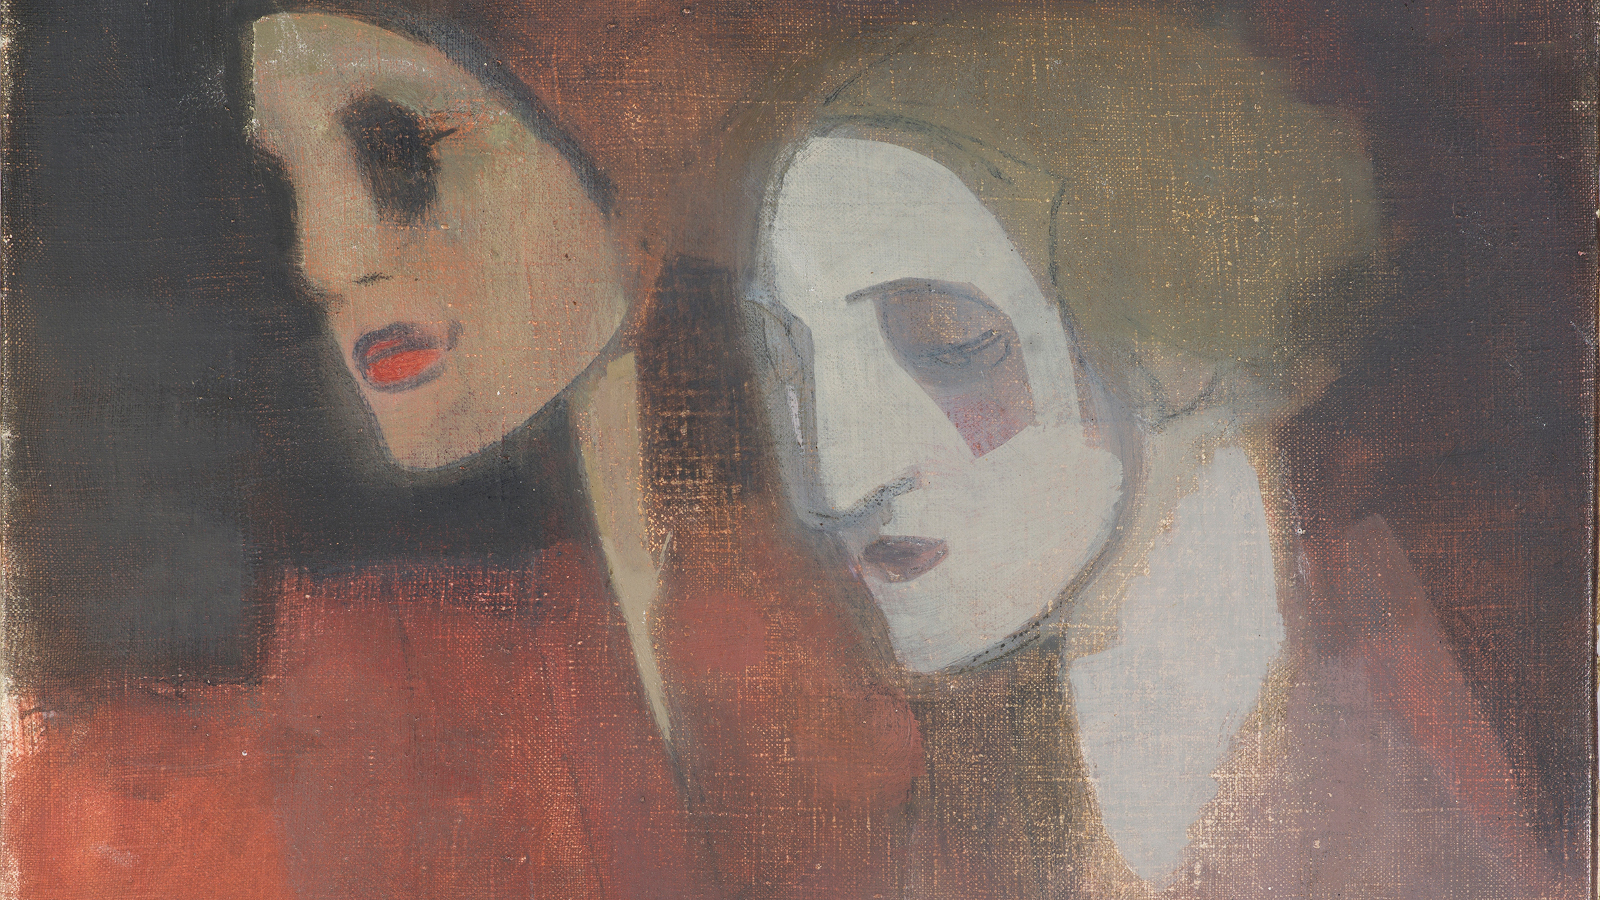 Kuvassa on Helene Schjerfbeckin taulu, jossa on kahden naisen kasvot vinottain.  Kuvan sävy on ruskea.